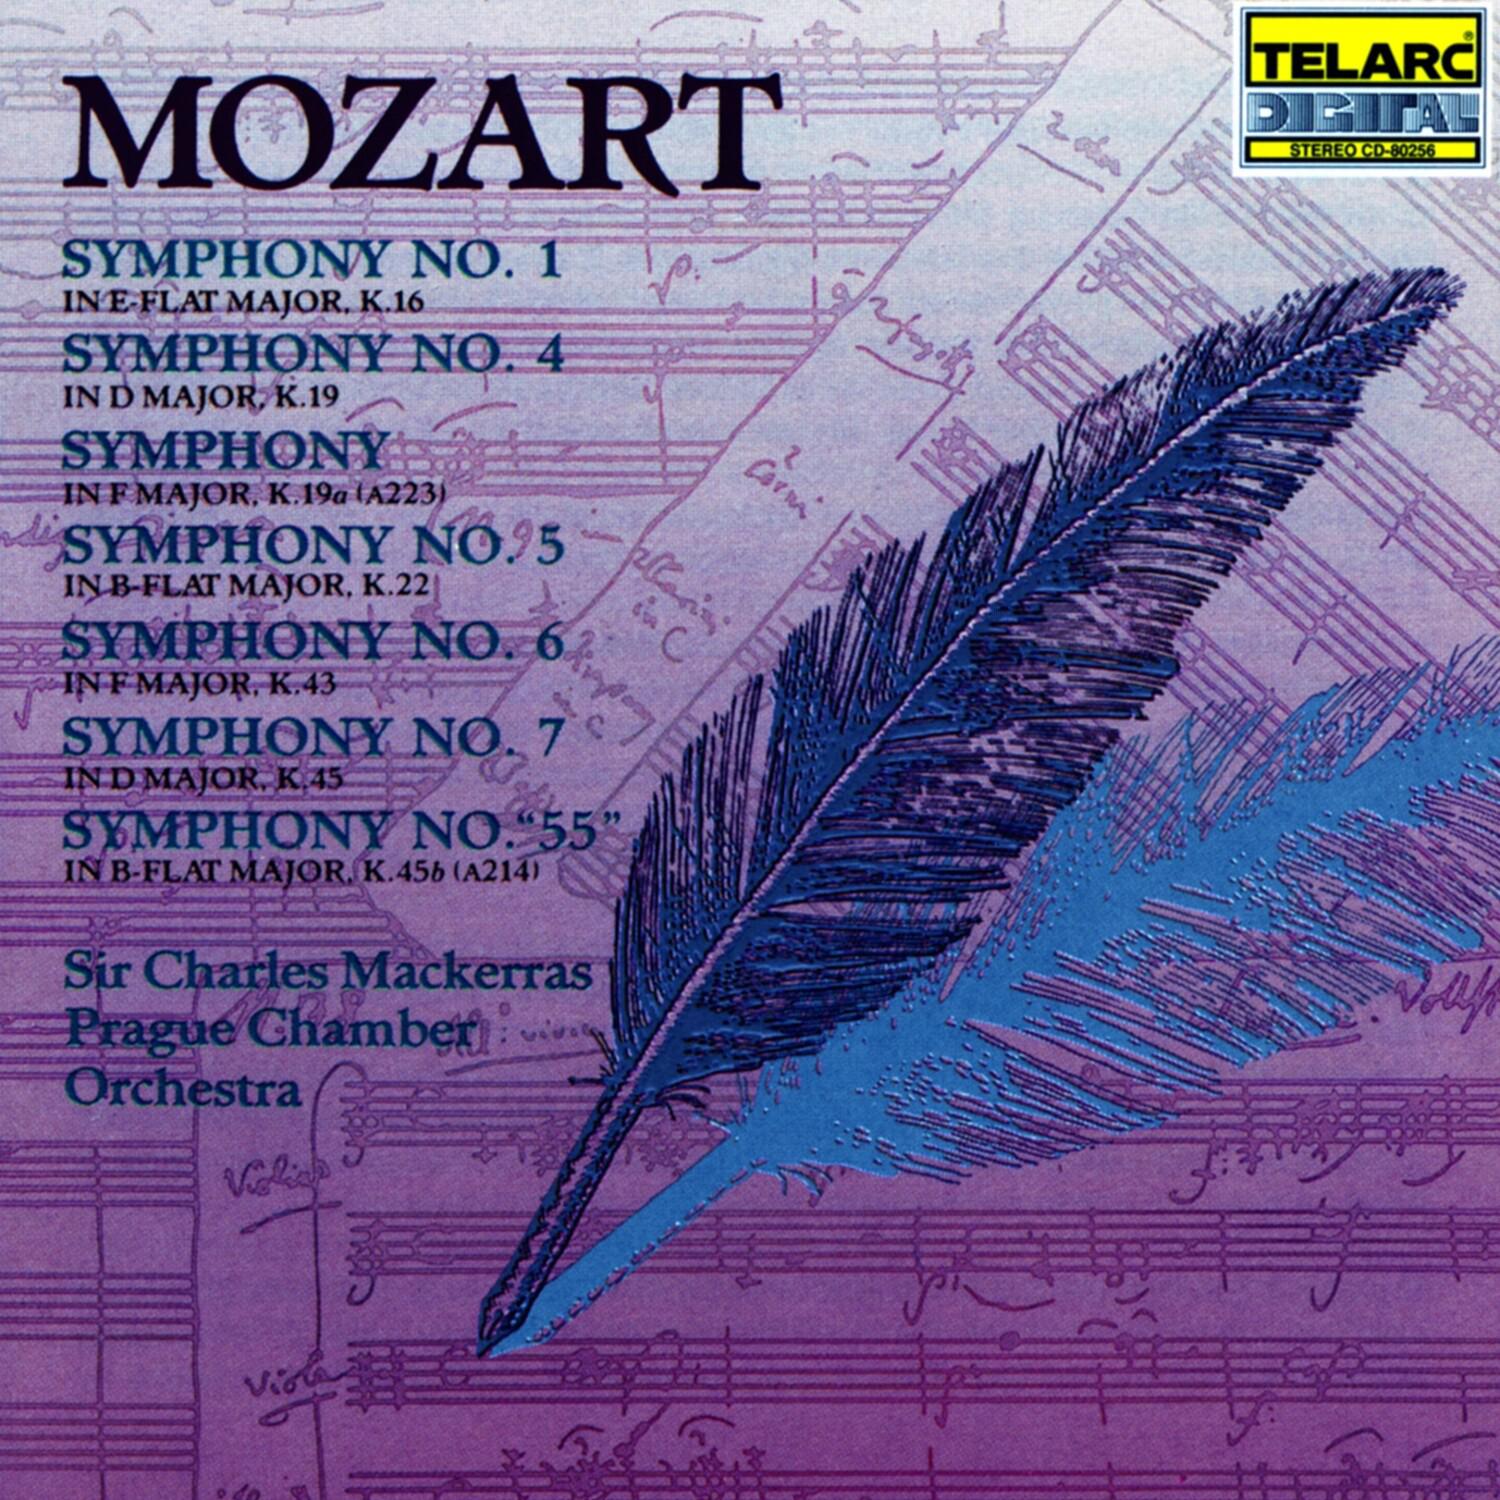 Symphony No. 5 in B-flat major, K.22: III. Allegro molto